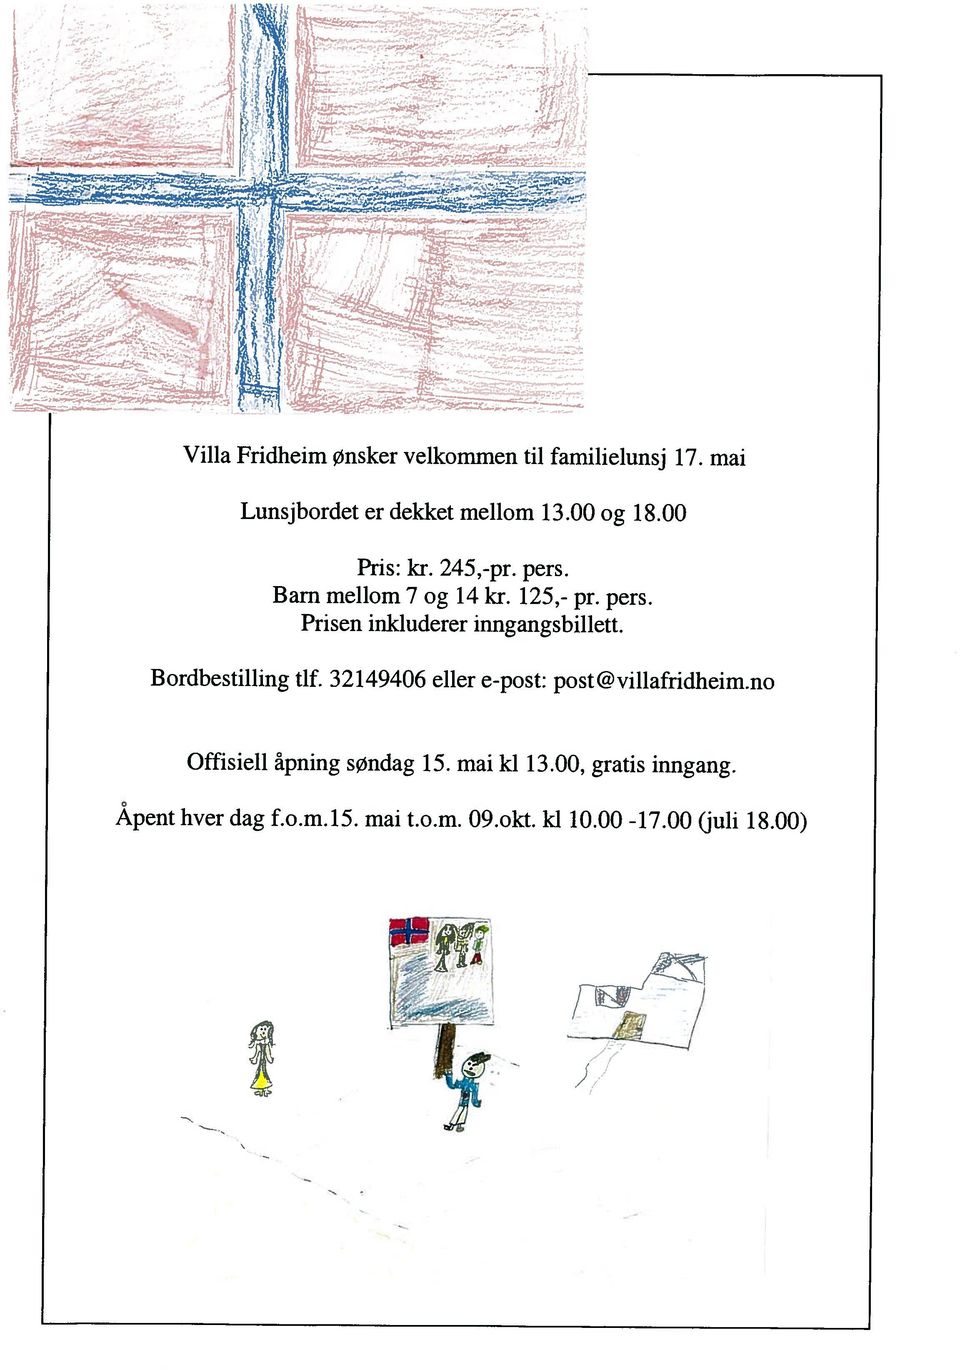 32149406 eller epost: post@villafridheim.no Prisen inkluderer inngangsbillett. Barn mellom 7 og 14 kr. 125, pr.